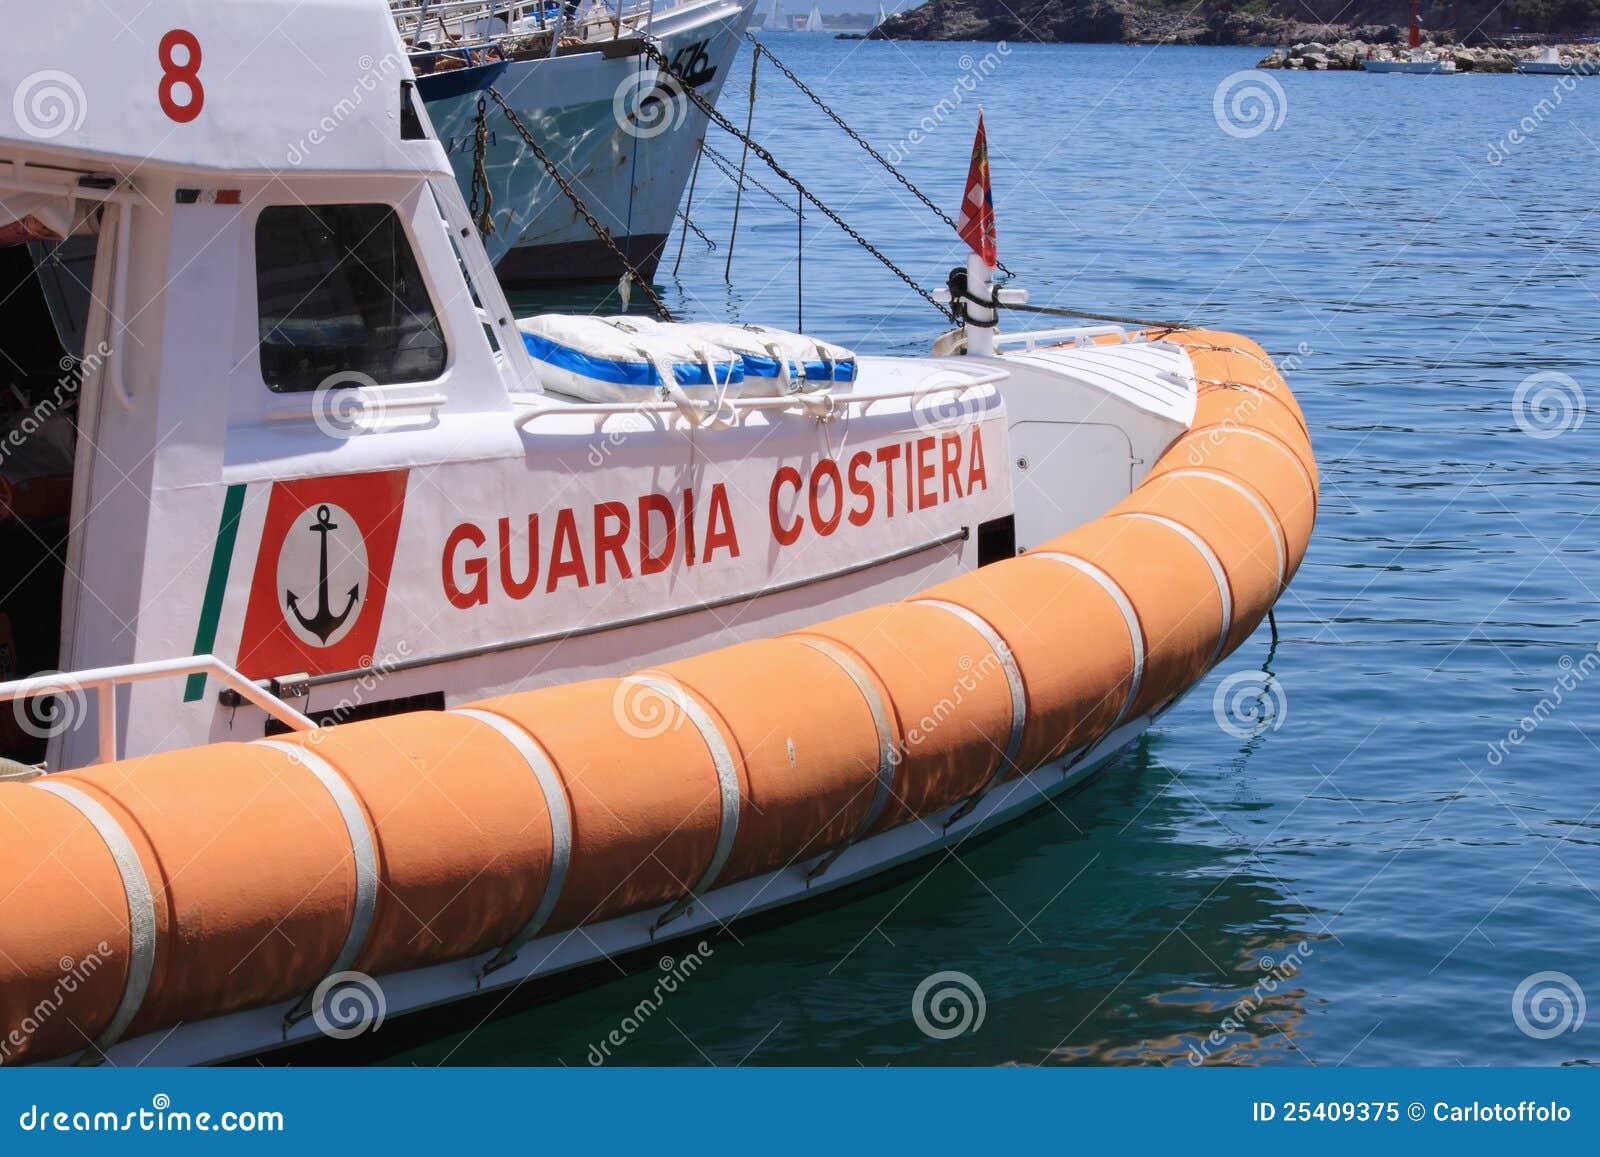 Italienische Küstenwache. Ein Boot der italienischen Küstenwache